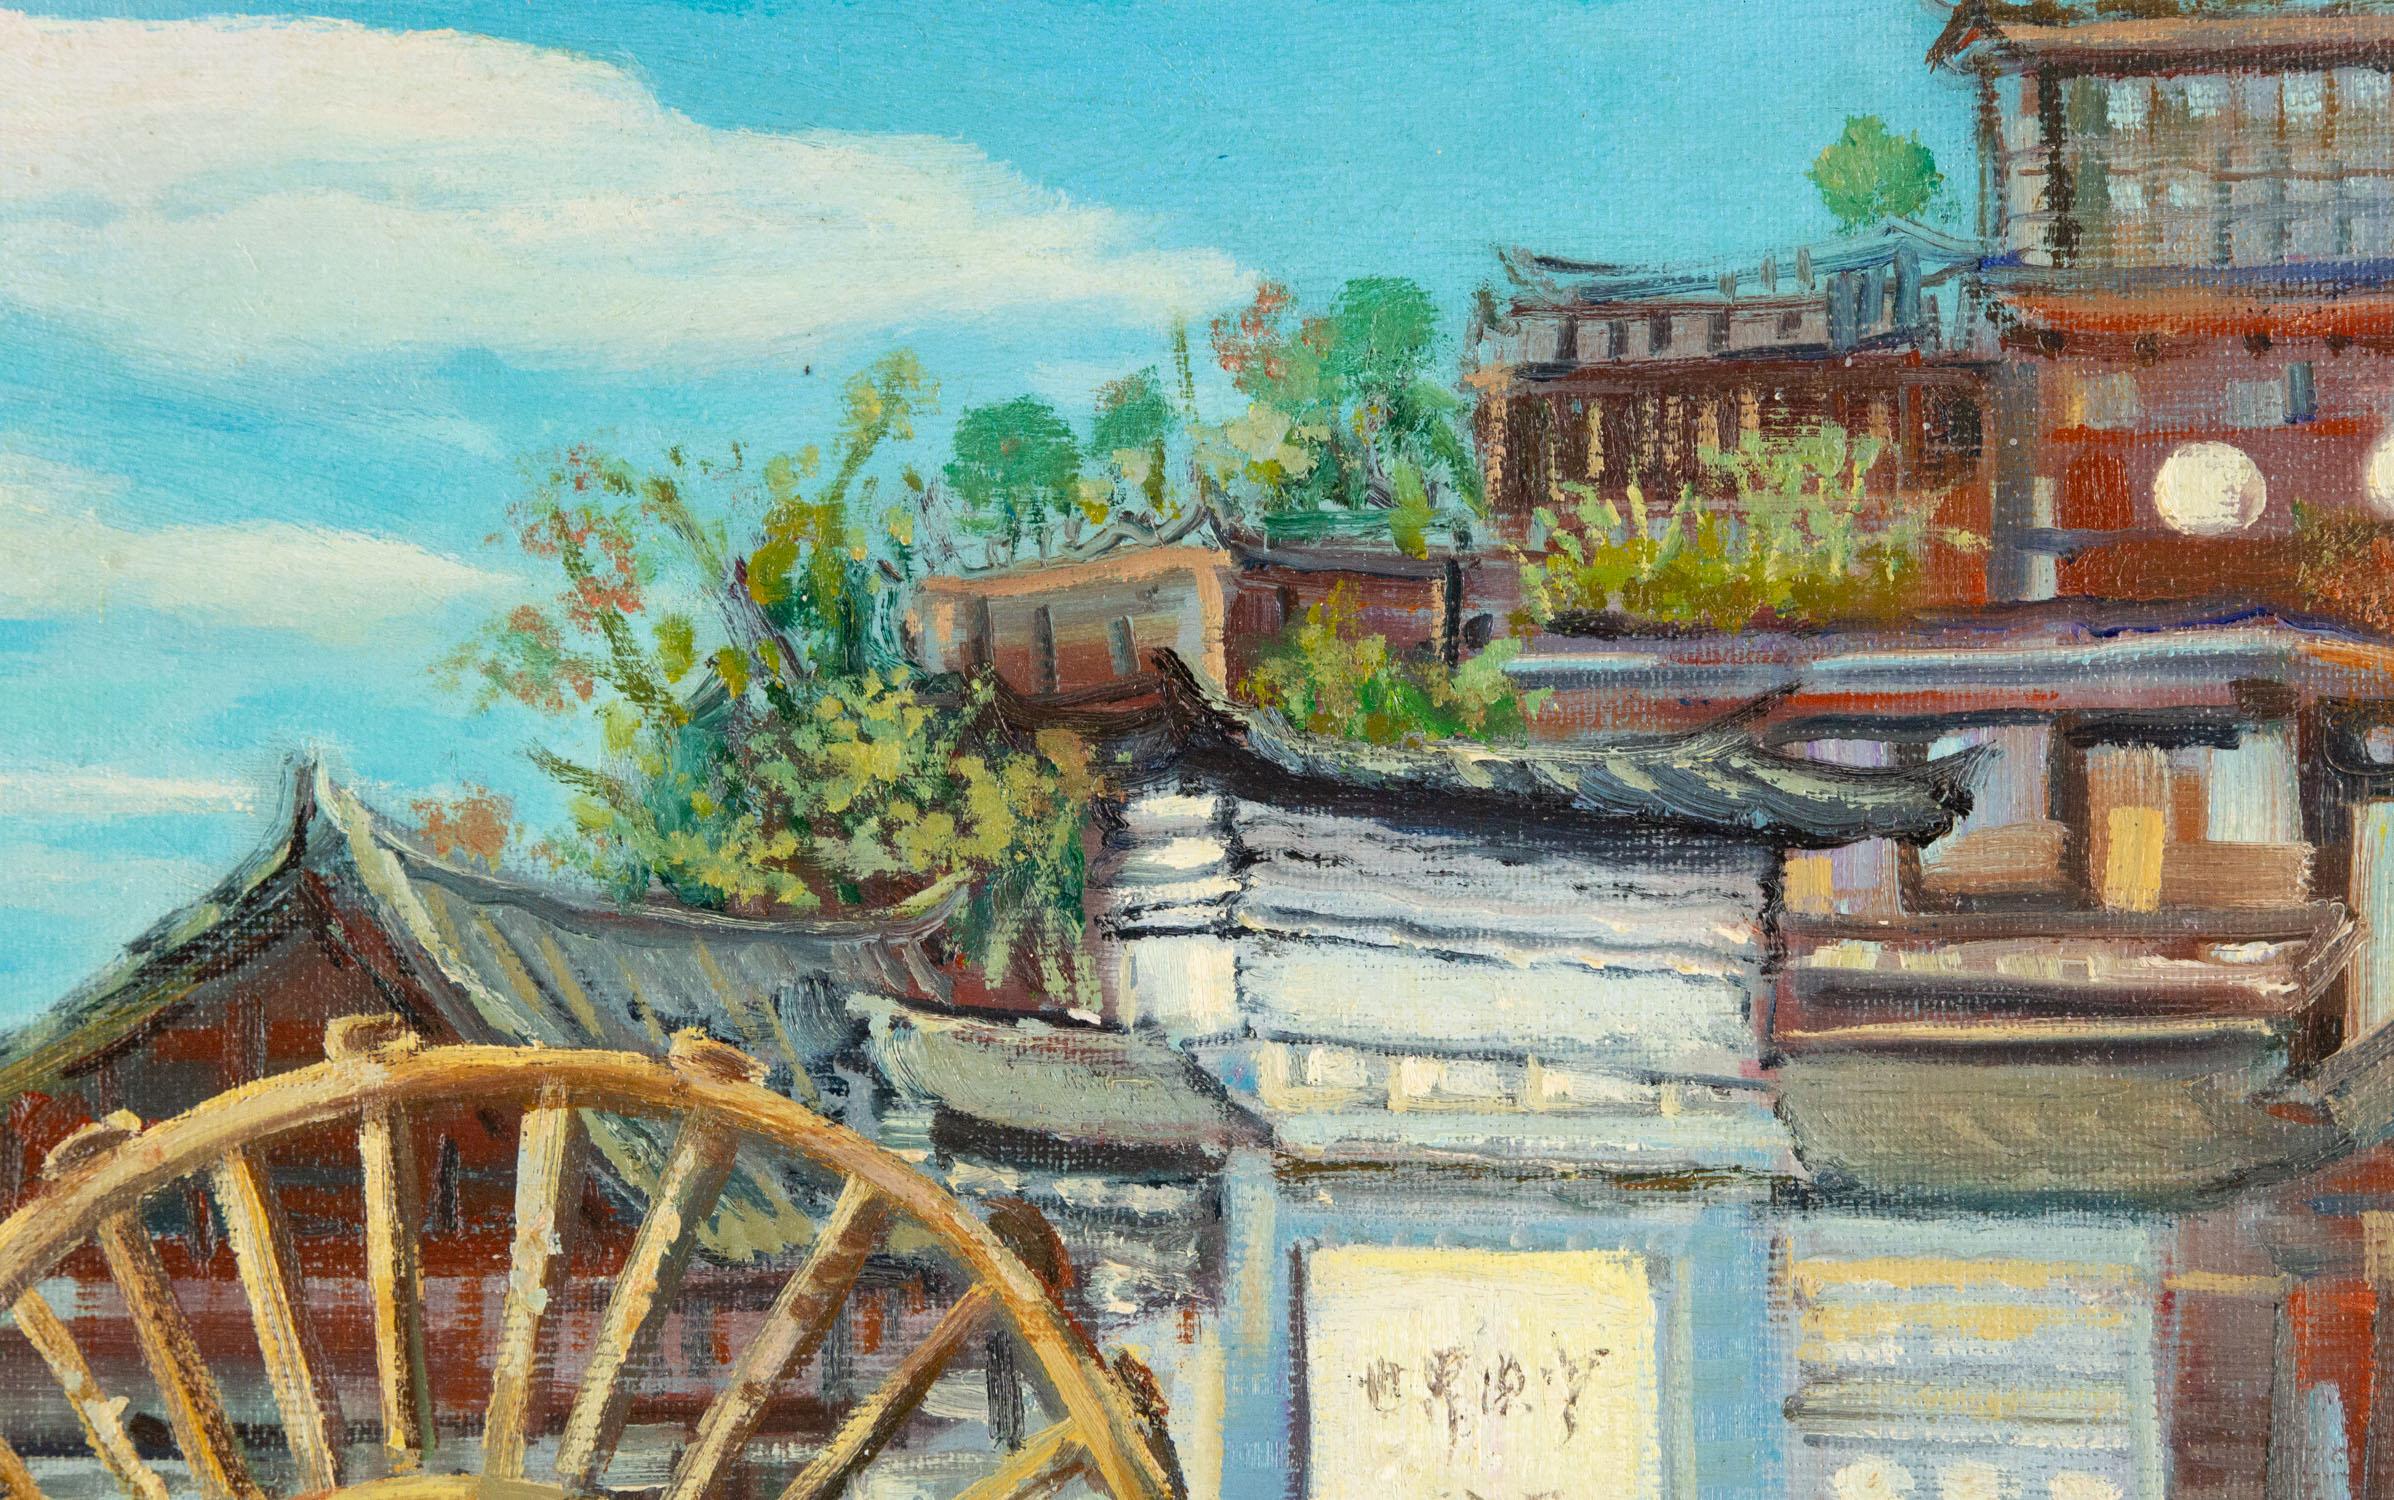 Titre : Paysage de Lijiang
Médium : Huile sur toile
Taille : 19 x 23 pouces
Cadre : Options d'encadrement disponibles !
Condit : Le tableau semble être en excellent état.
Note : Cette peinture n'est pas tendue
Année : 2000 CIRCA
Artistics : DeJun